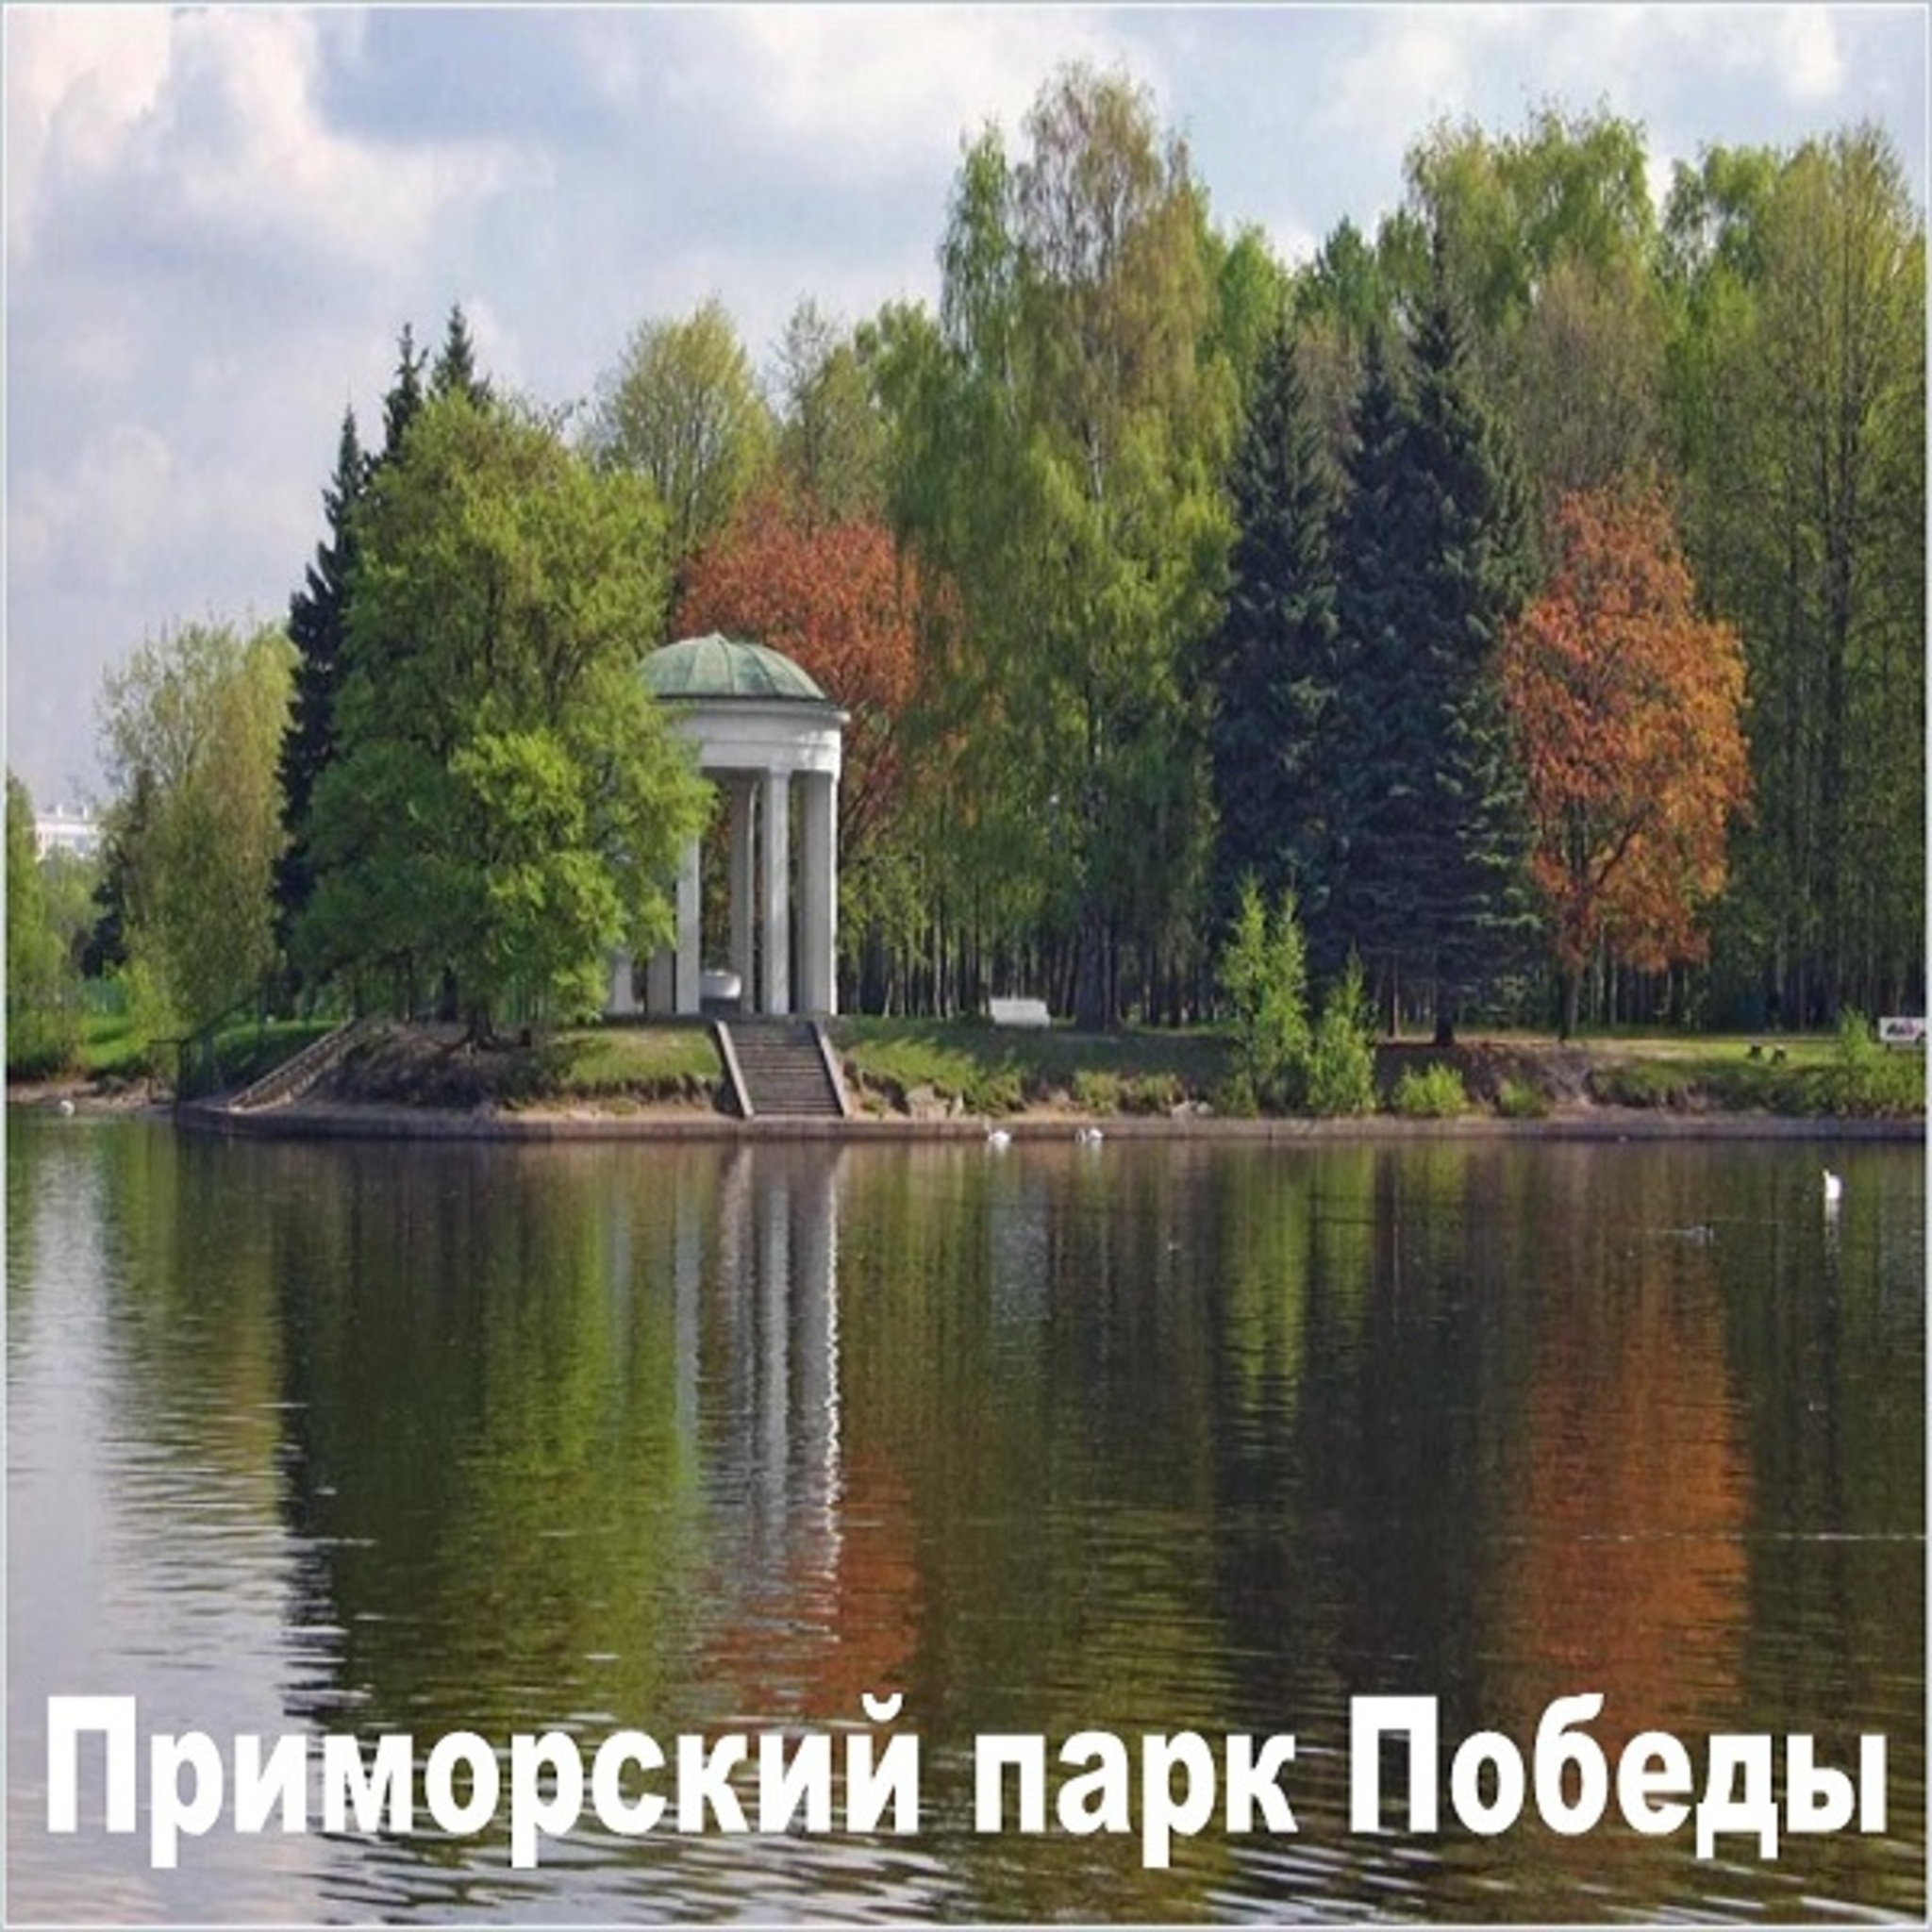 Primorski Park of Victory